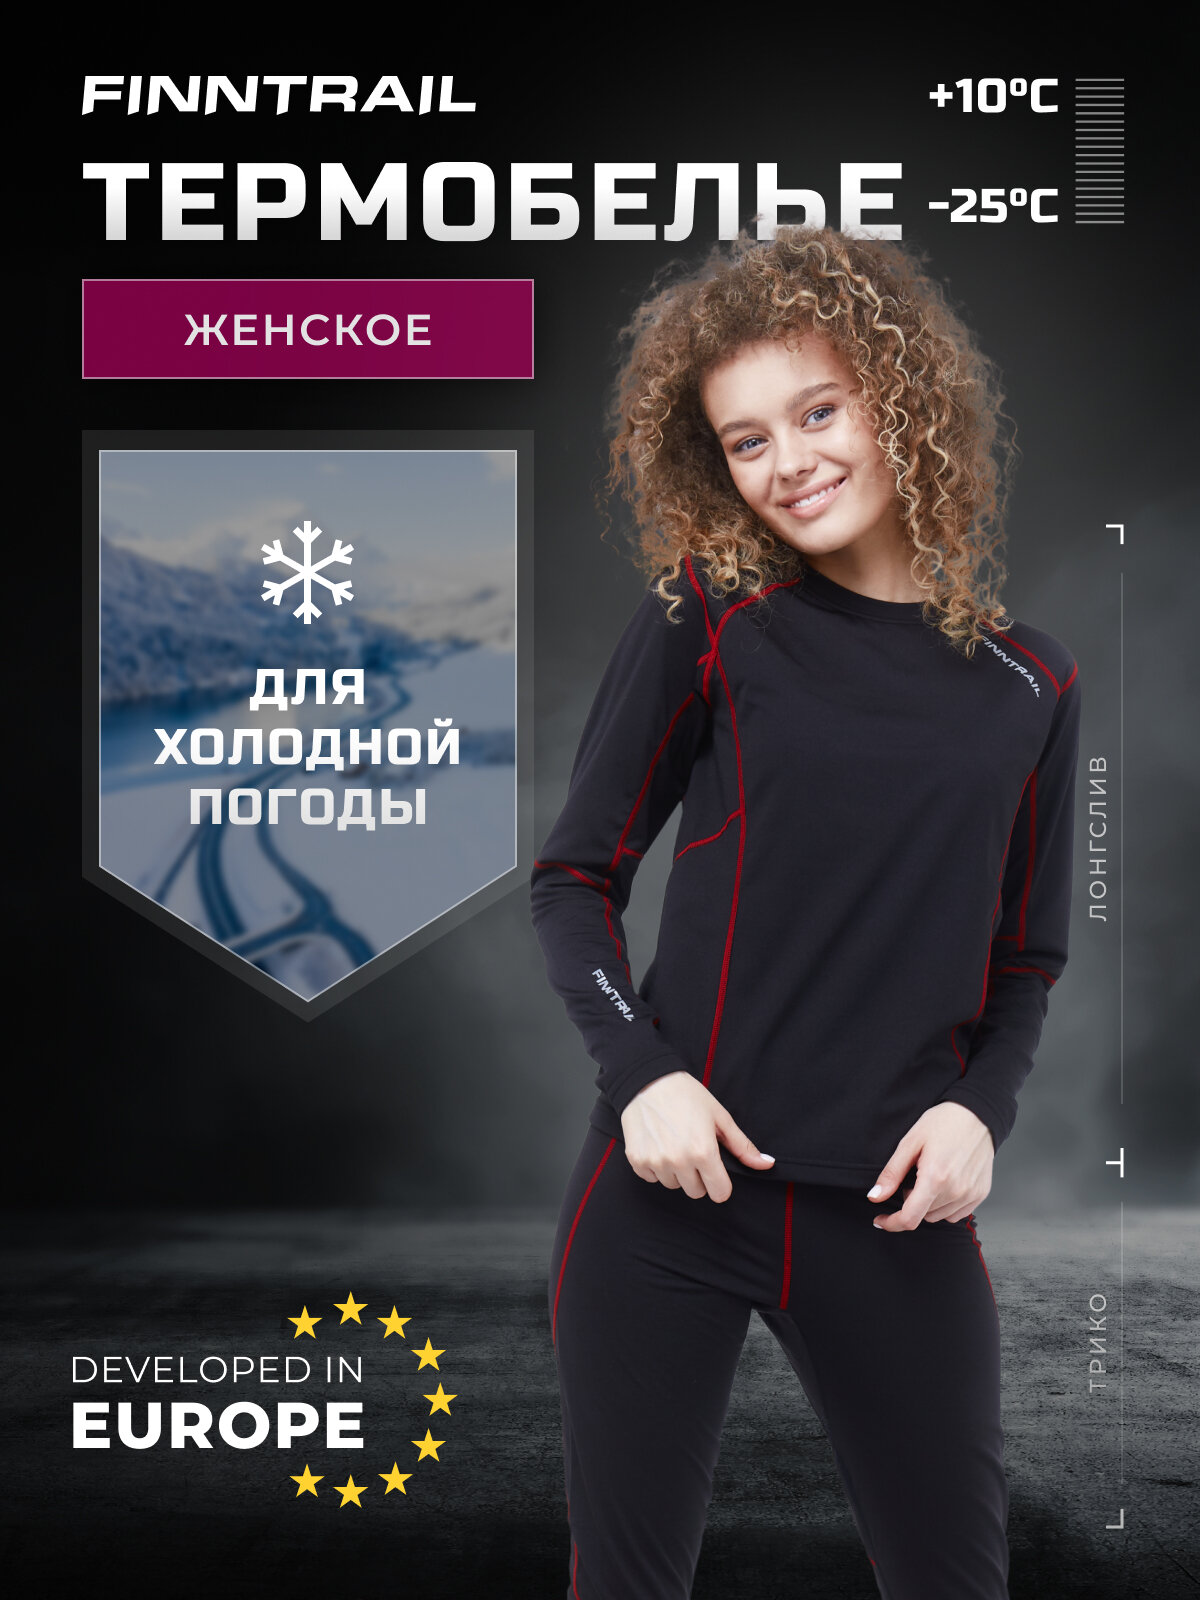 Термобелье женское Thermo-S влагоотводящее теплое (осень) с флисом для рыбалки похода лыж туризма